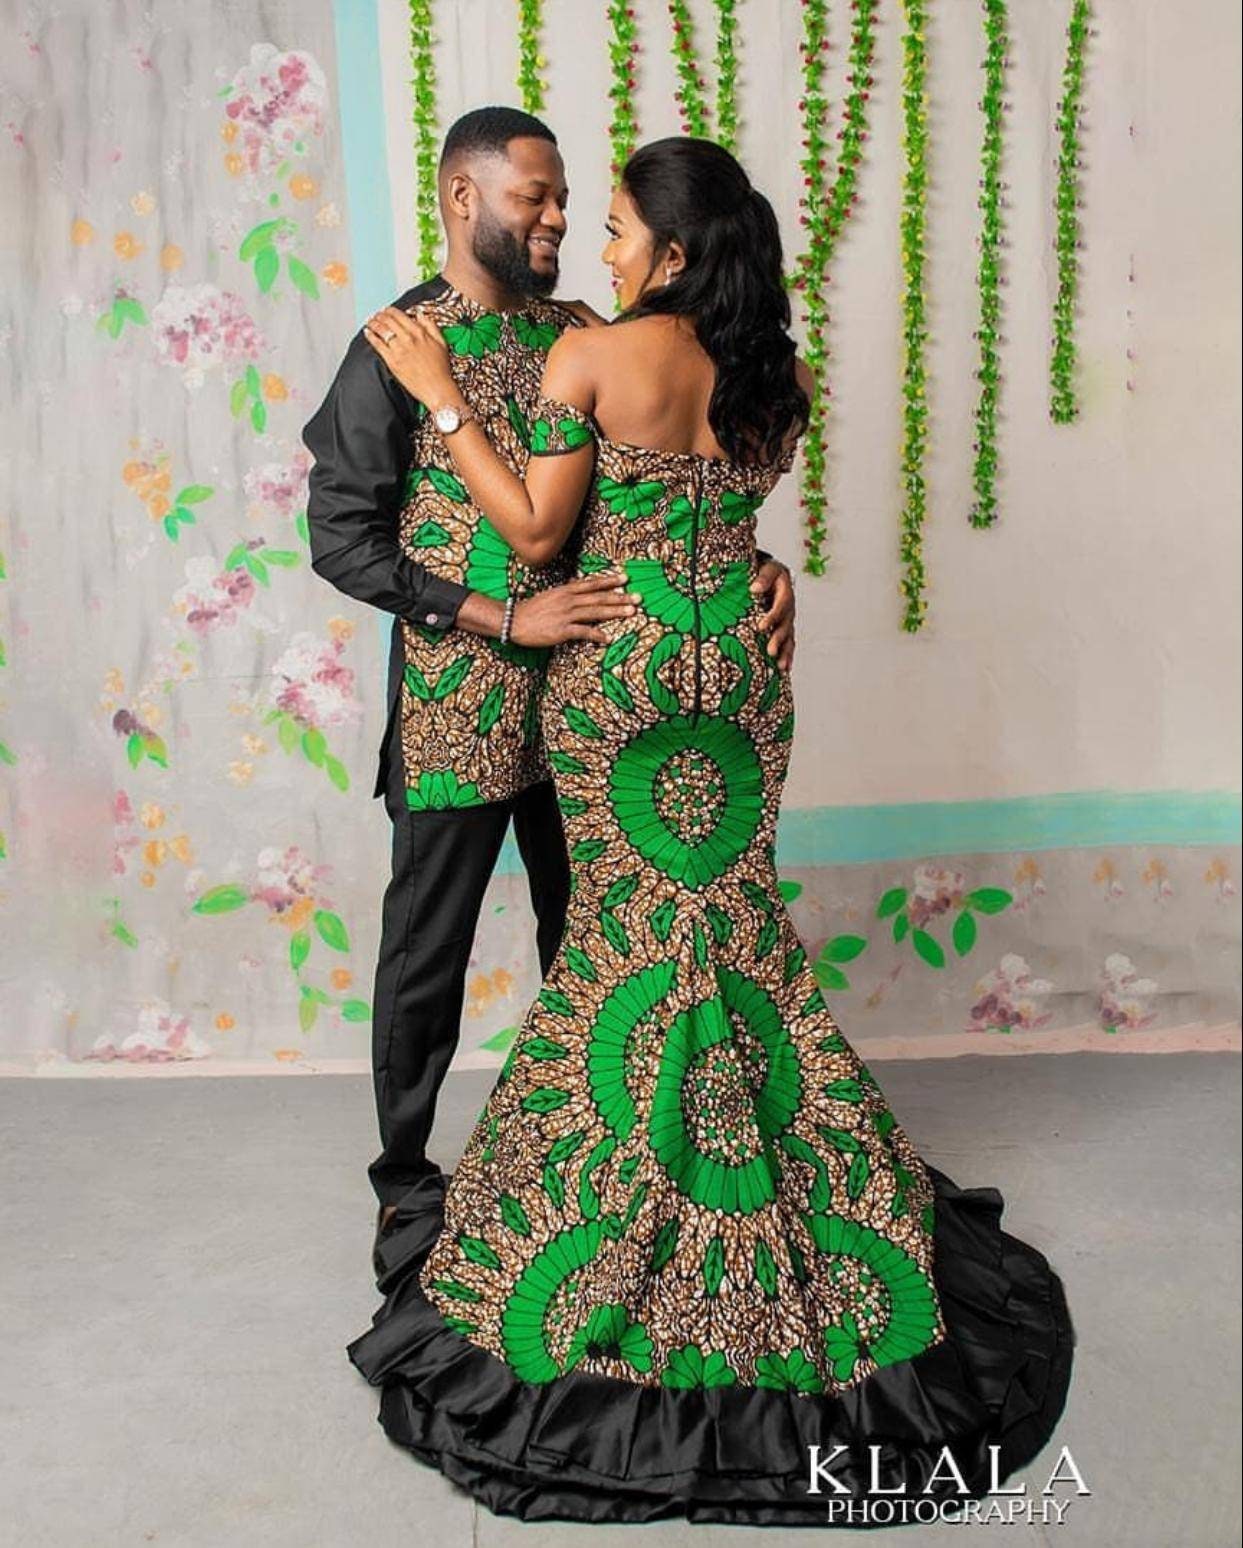 Couples Matching outfits @vongadesigns #africanfashion #ankaradress  #africanfashiontrends #africanprints #mzansiweddings #mzansifashion…